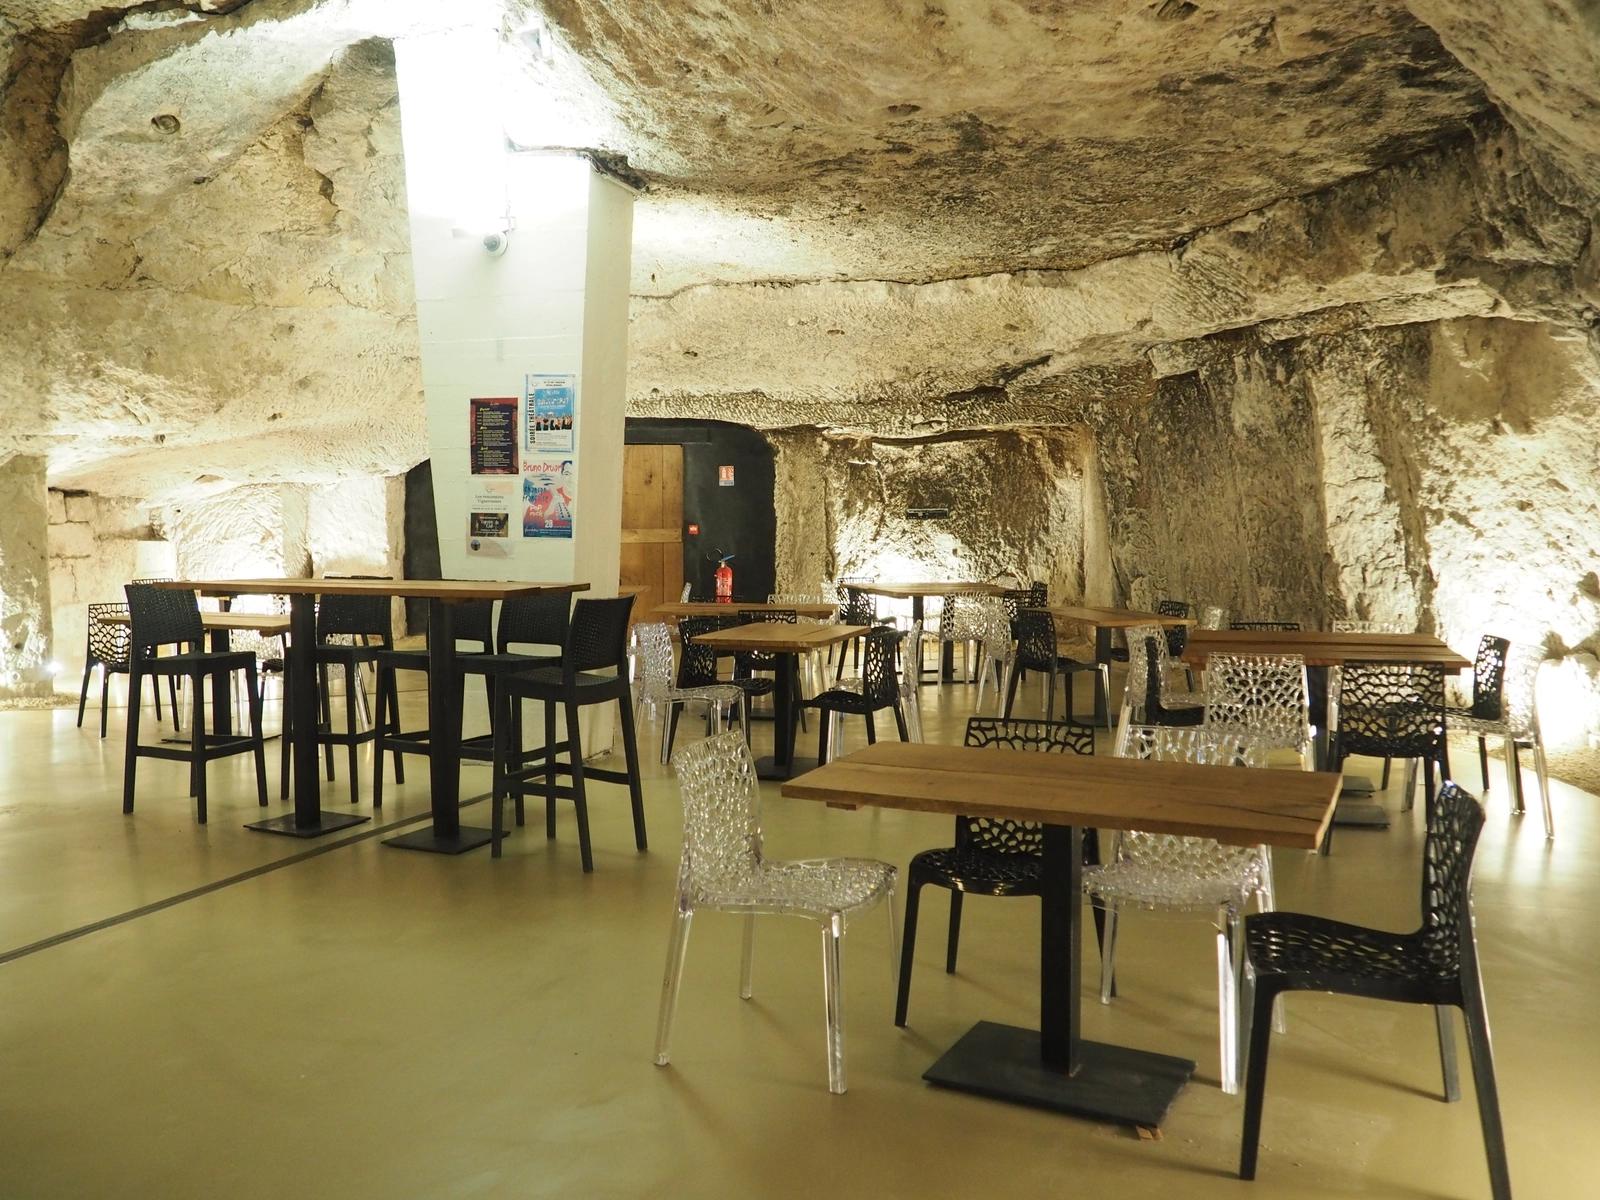 Comedor dentro Un lugar insólito en una cueva troglodita - 1